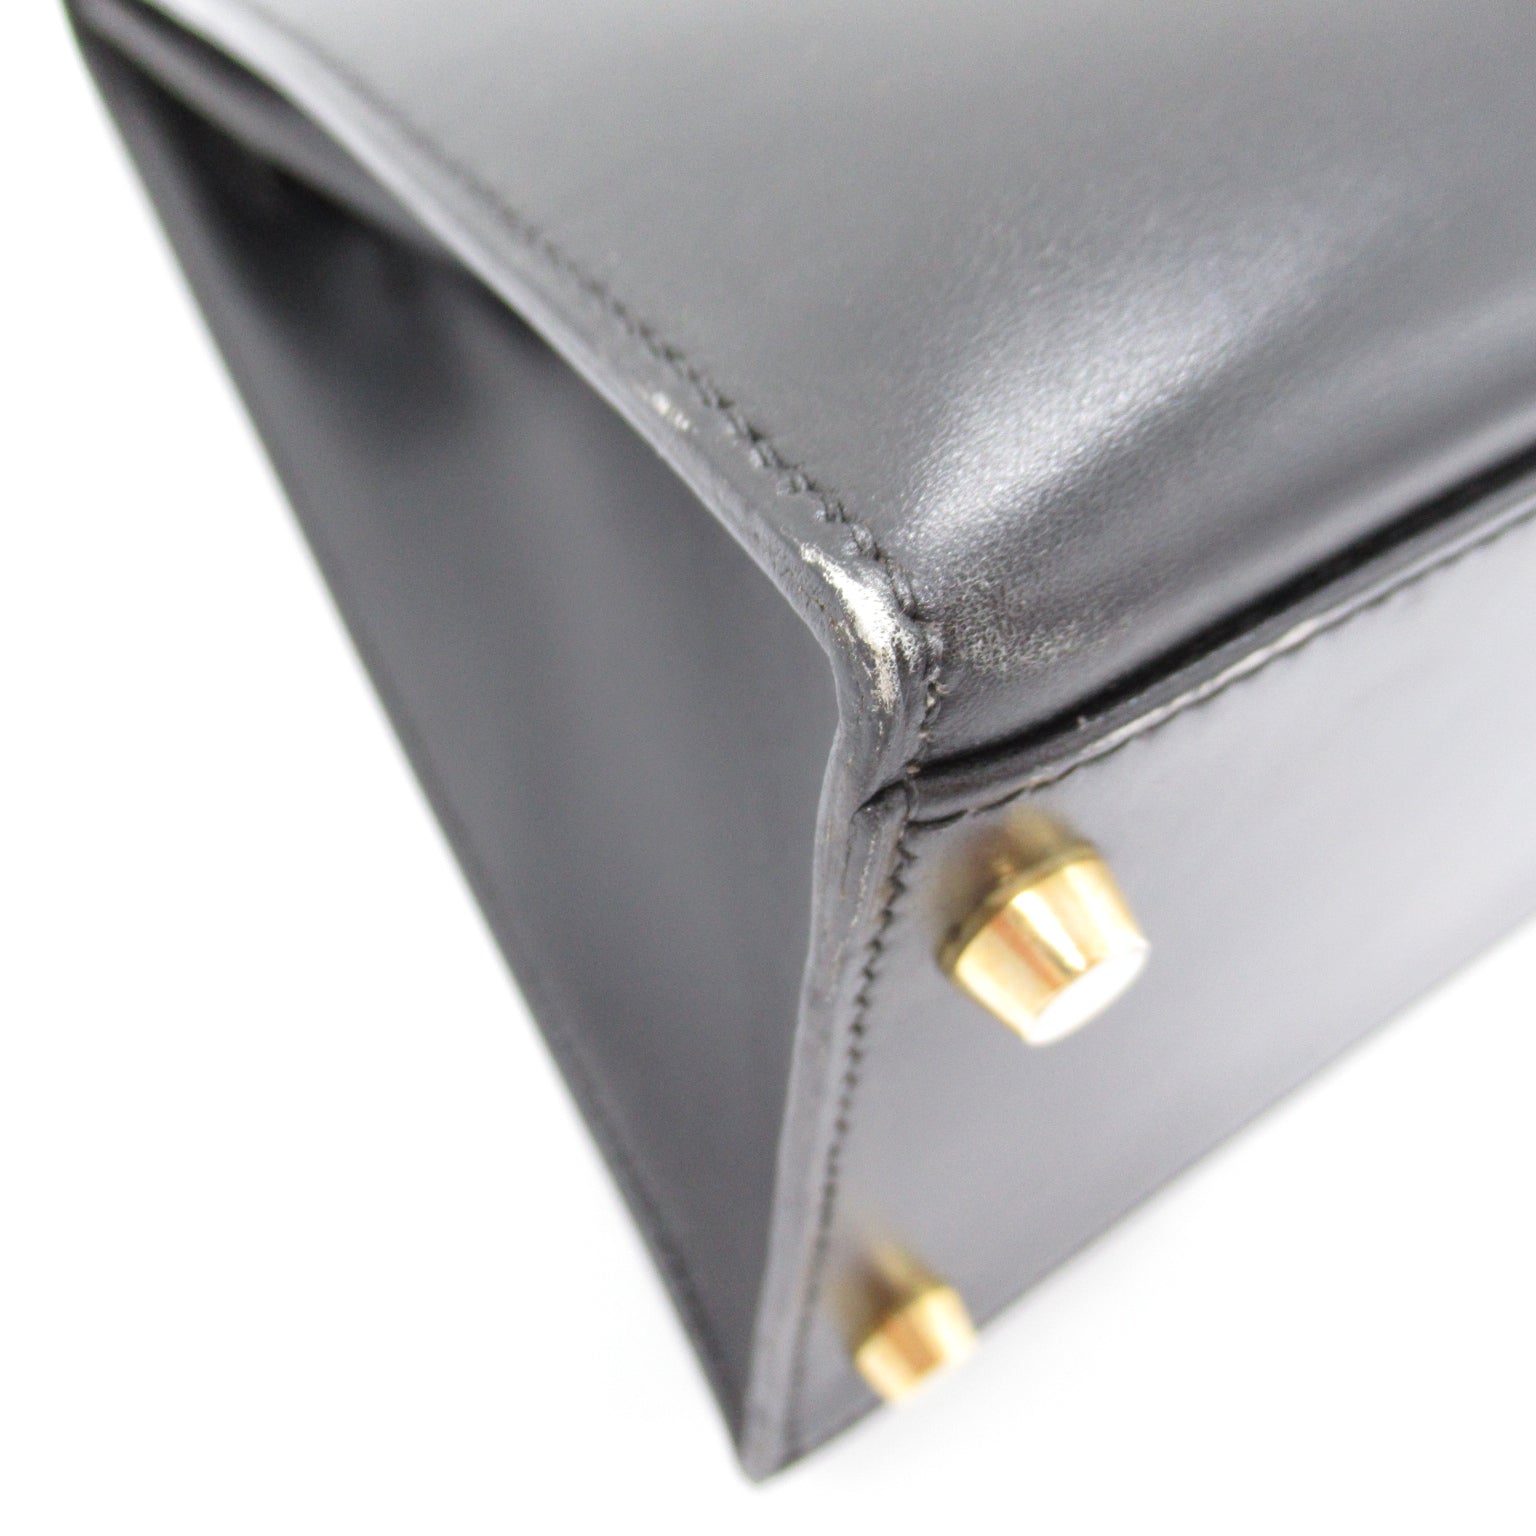 Hermes Kelly 32 Black Handbag  Box Carf  Black Box Carf